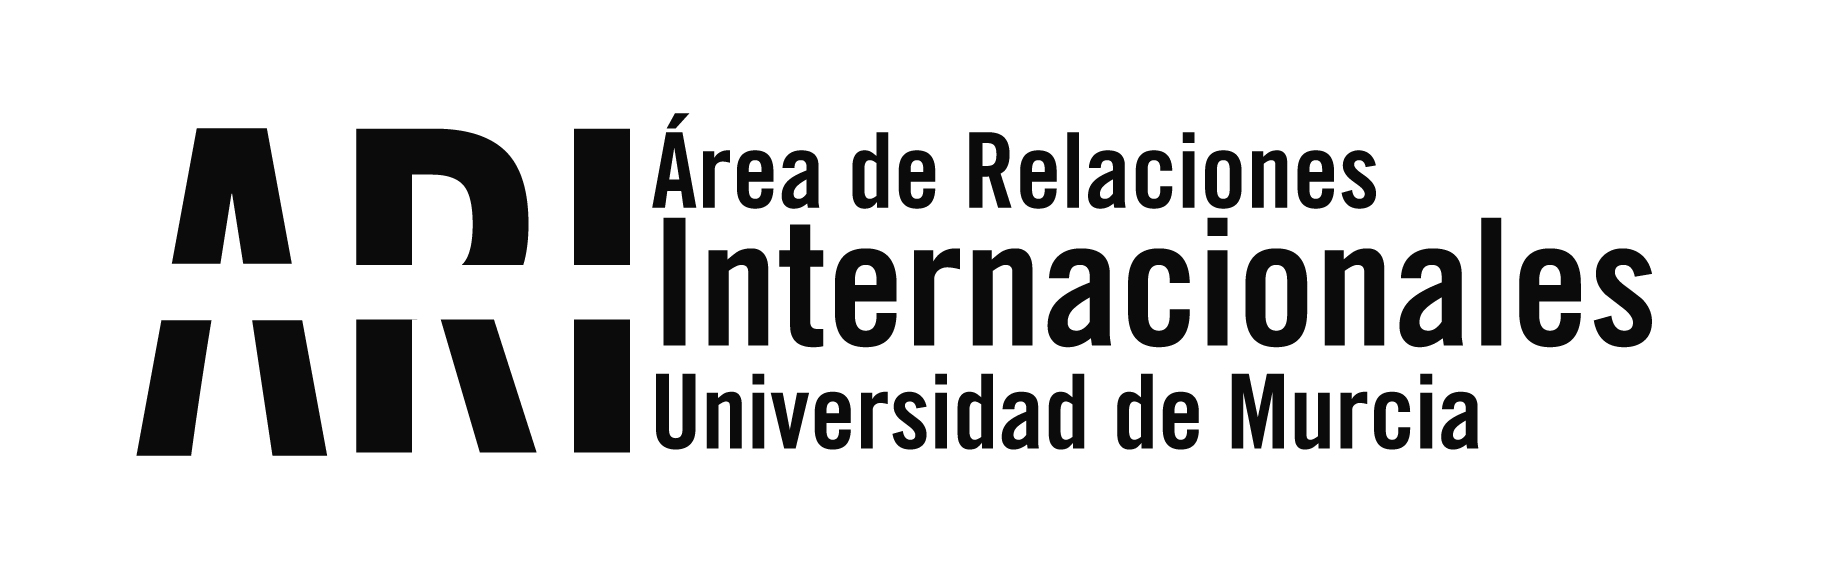 20180322 Recepcion Alumnos ILA Cónsul Córdoba Argentina - Eventos - Área de Relaciones Internacionales